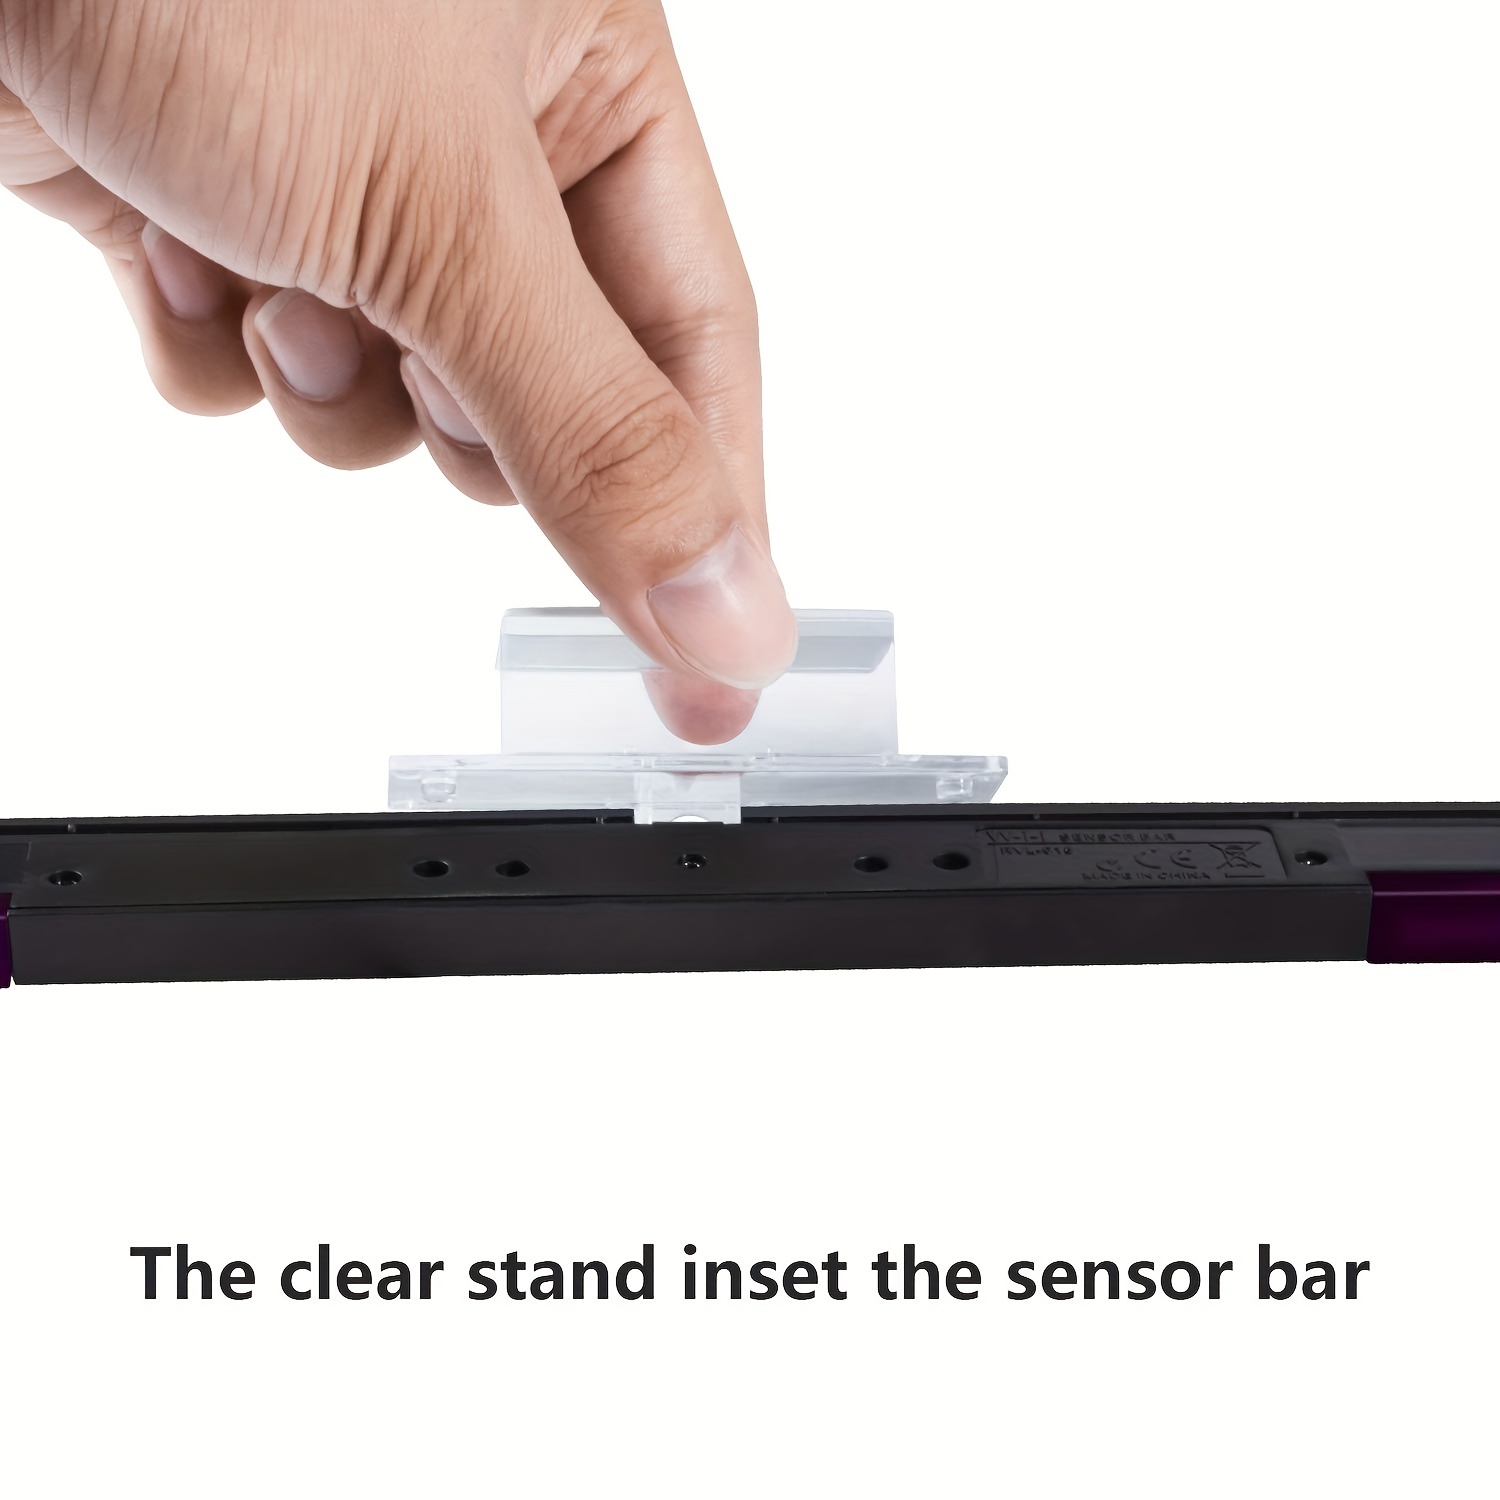 Sensor Bar Wii et capteur de mouvement sur Paris - Mod fusion